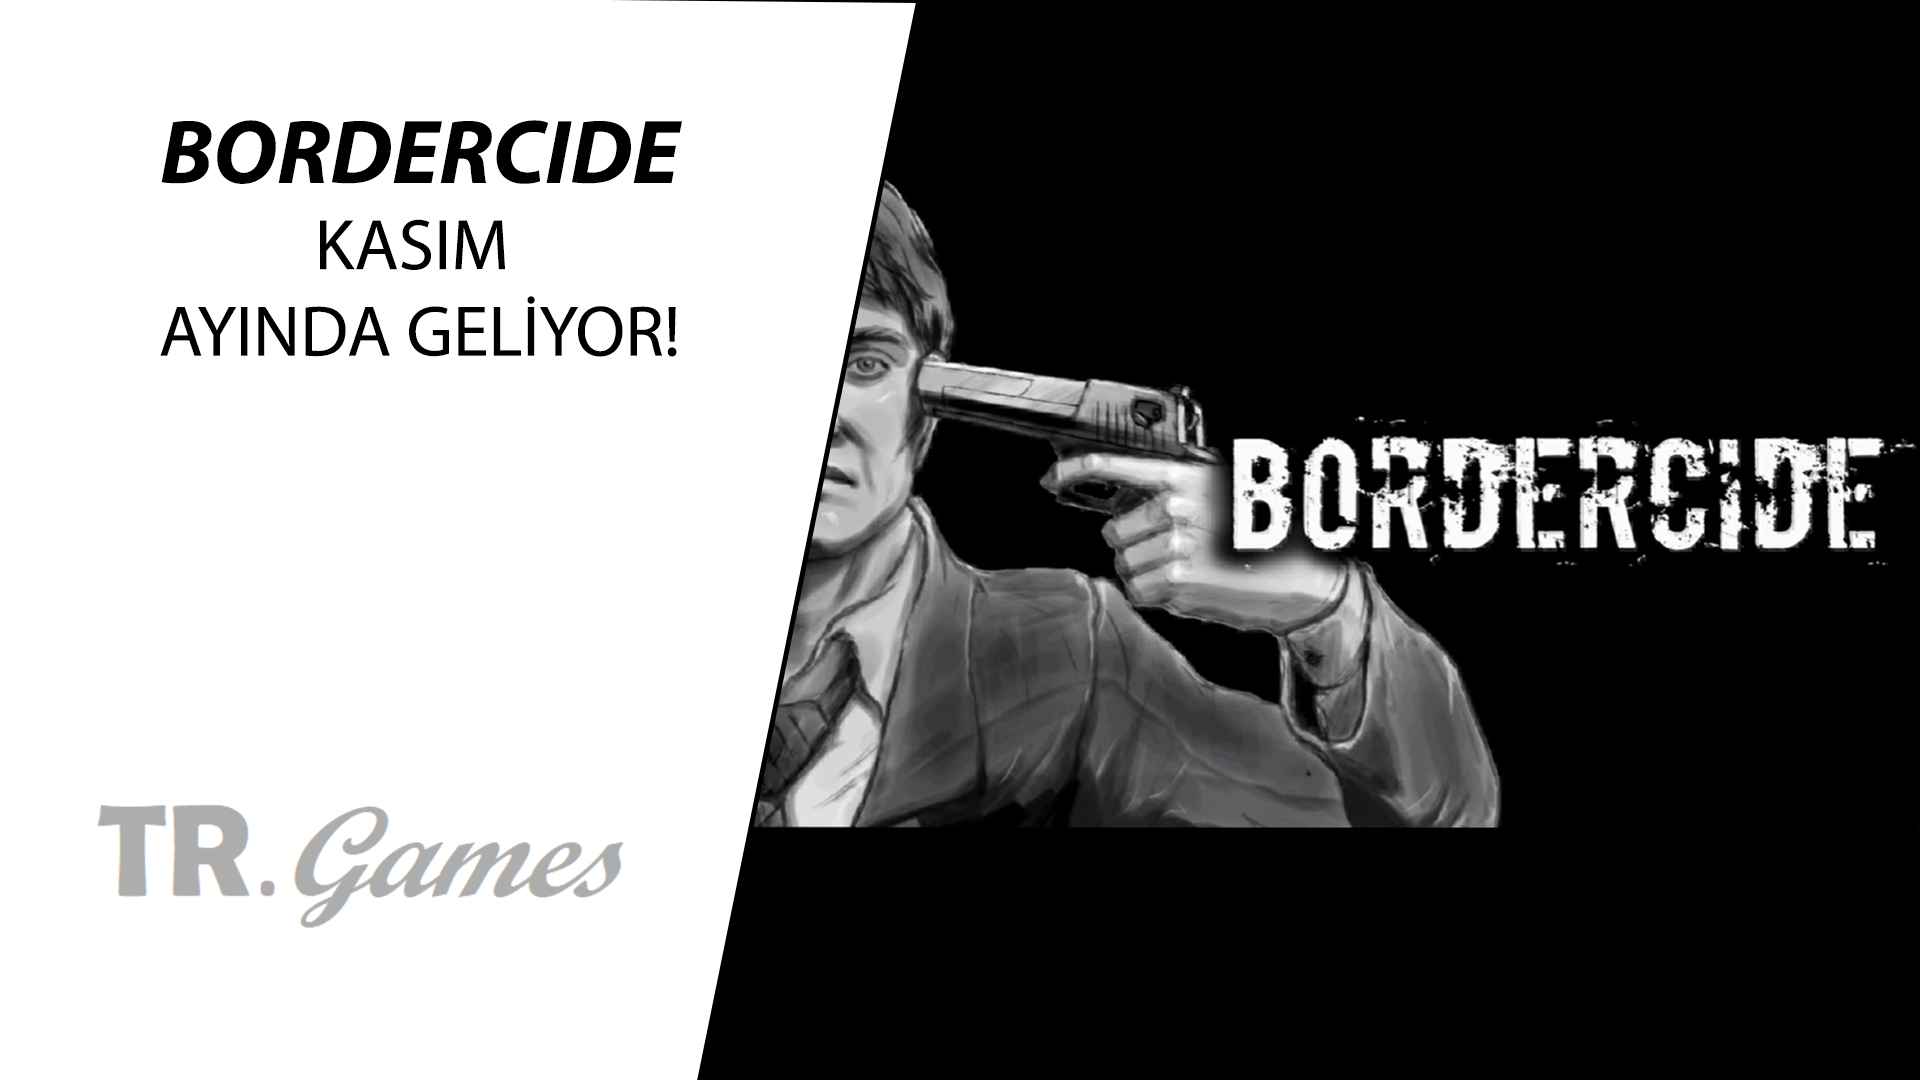 Bordercide